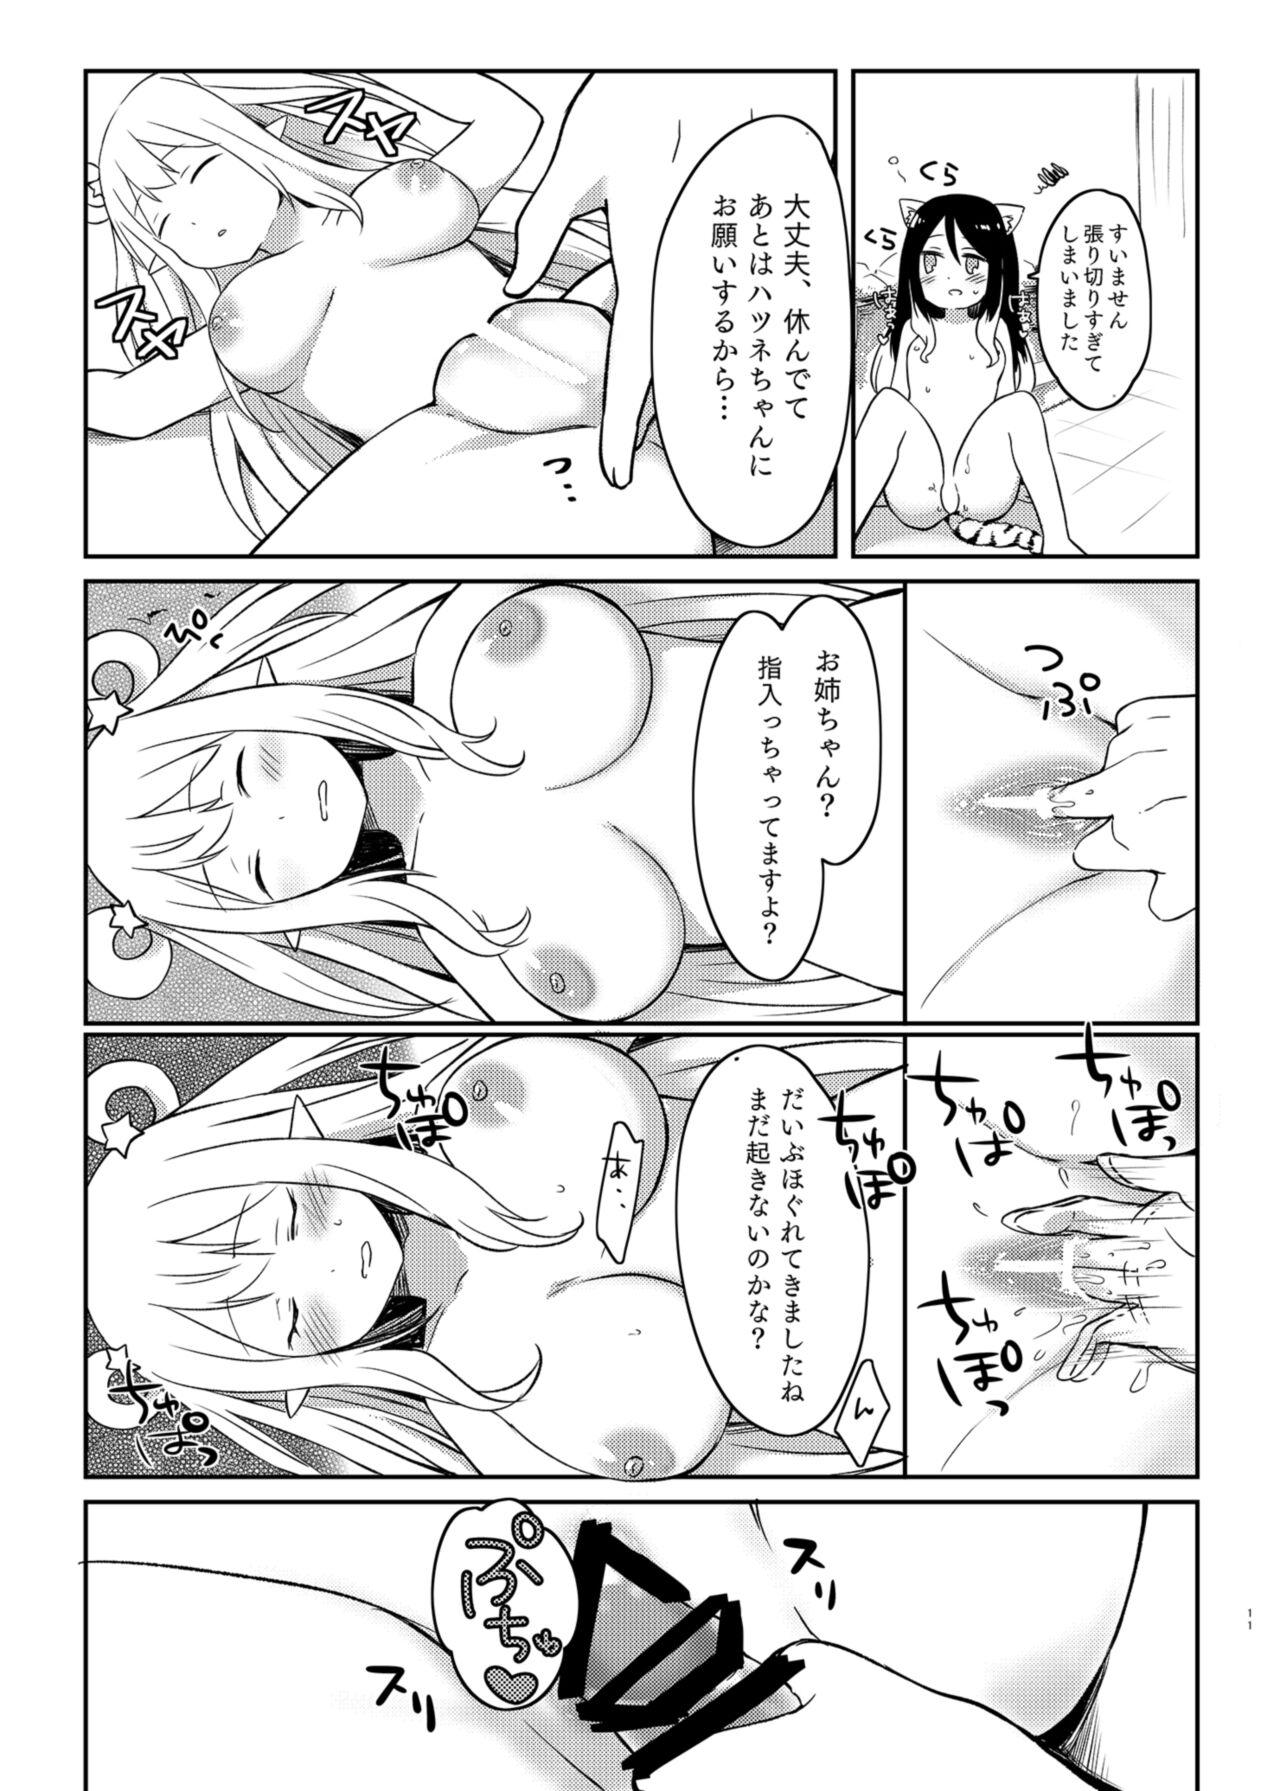 Babes Hatsune to Shiori no Yukemuri Daisakusen - Princess connect Gaydudes - Page 11